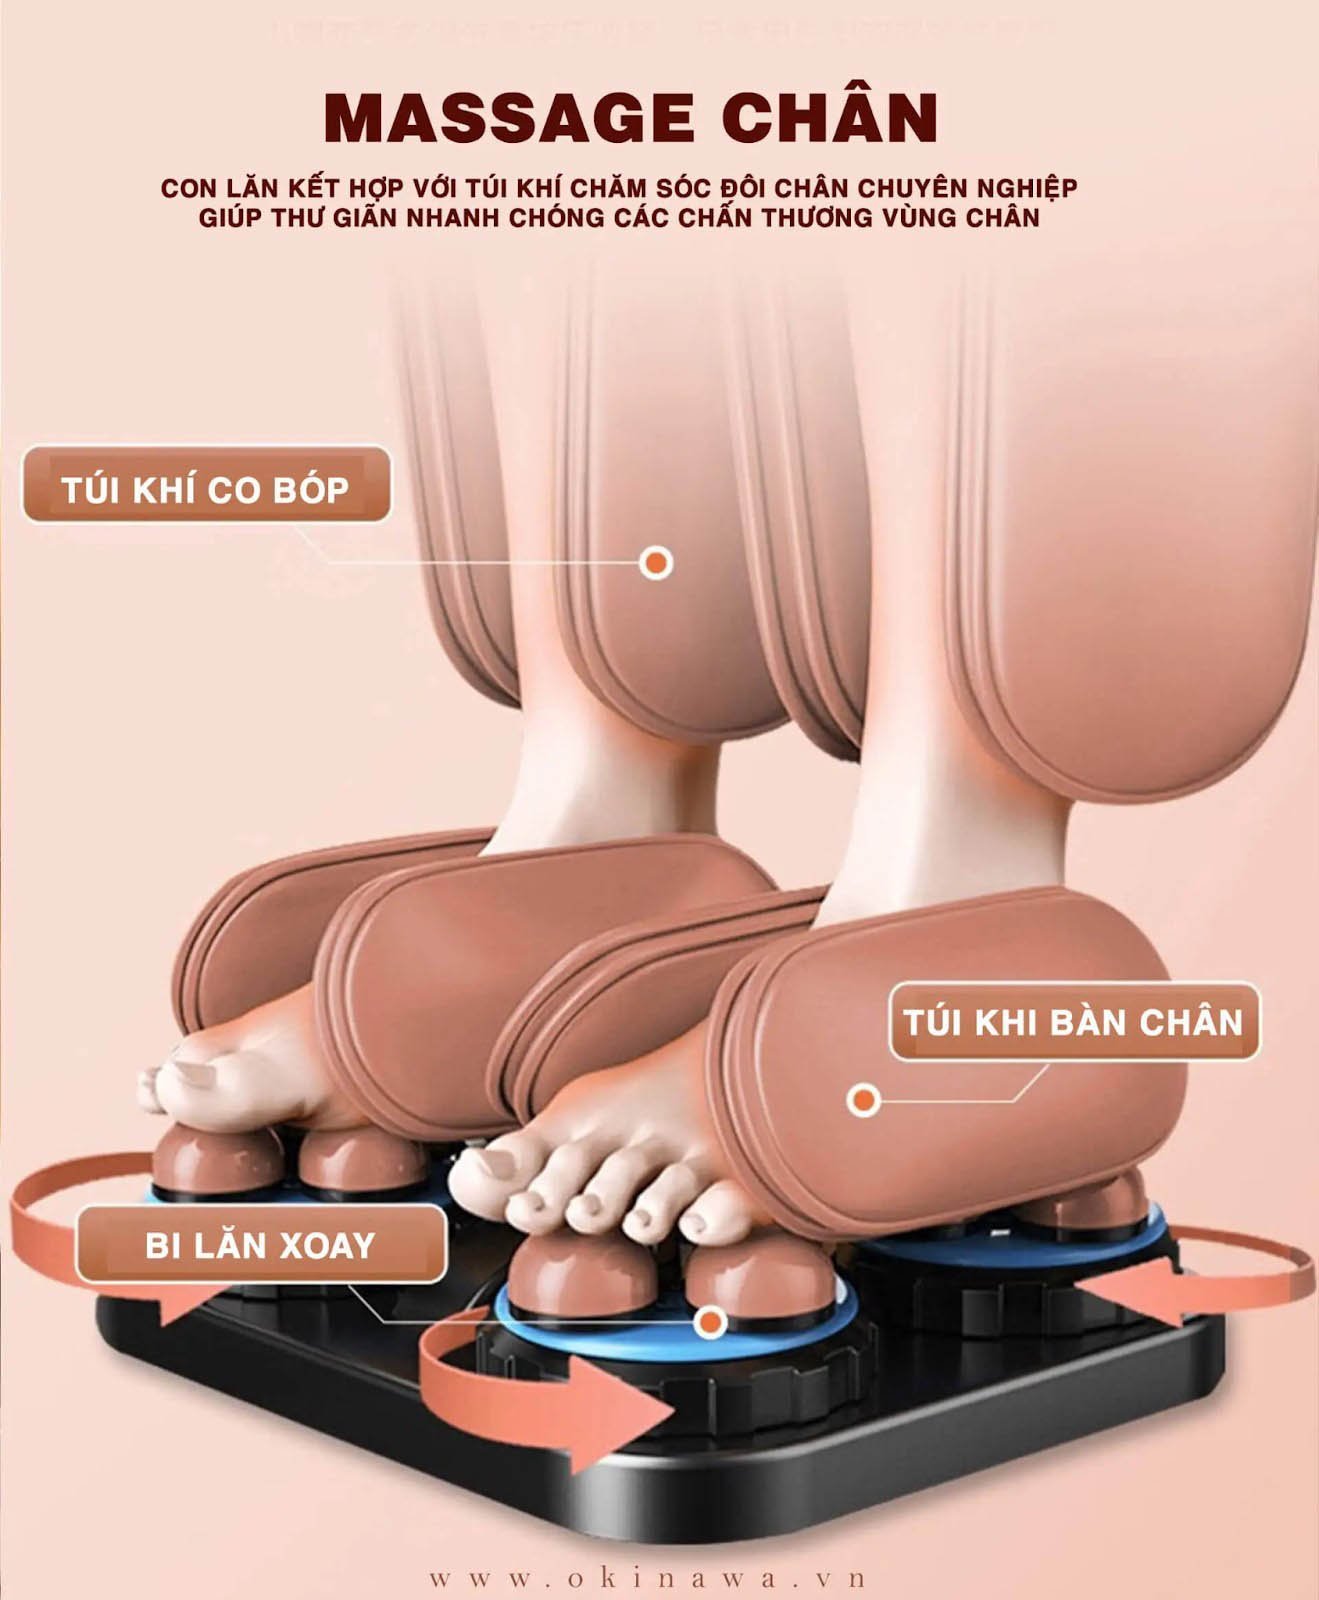 Massage chân ghế massage OKINAWA OS - 121